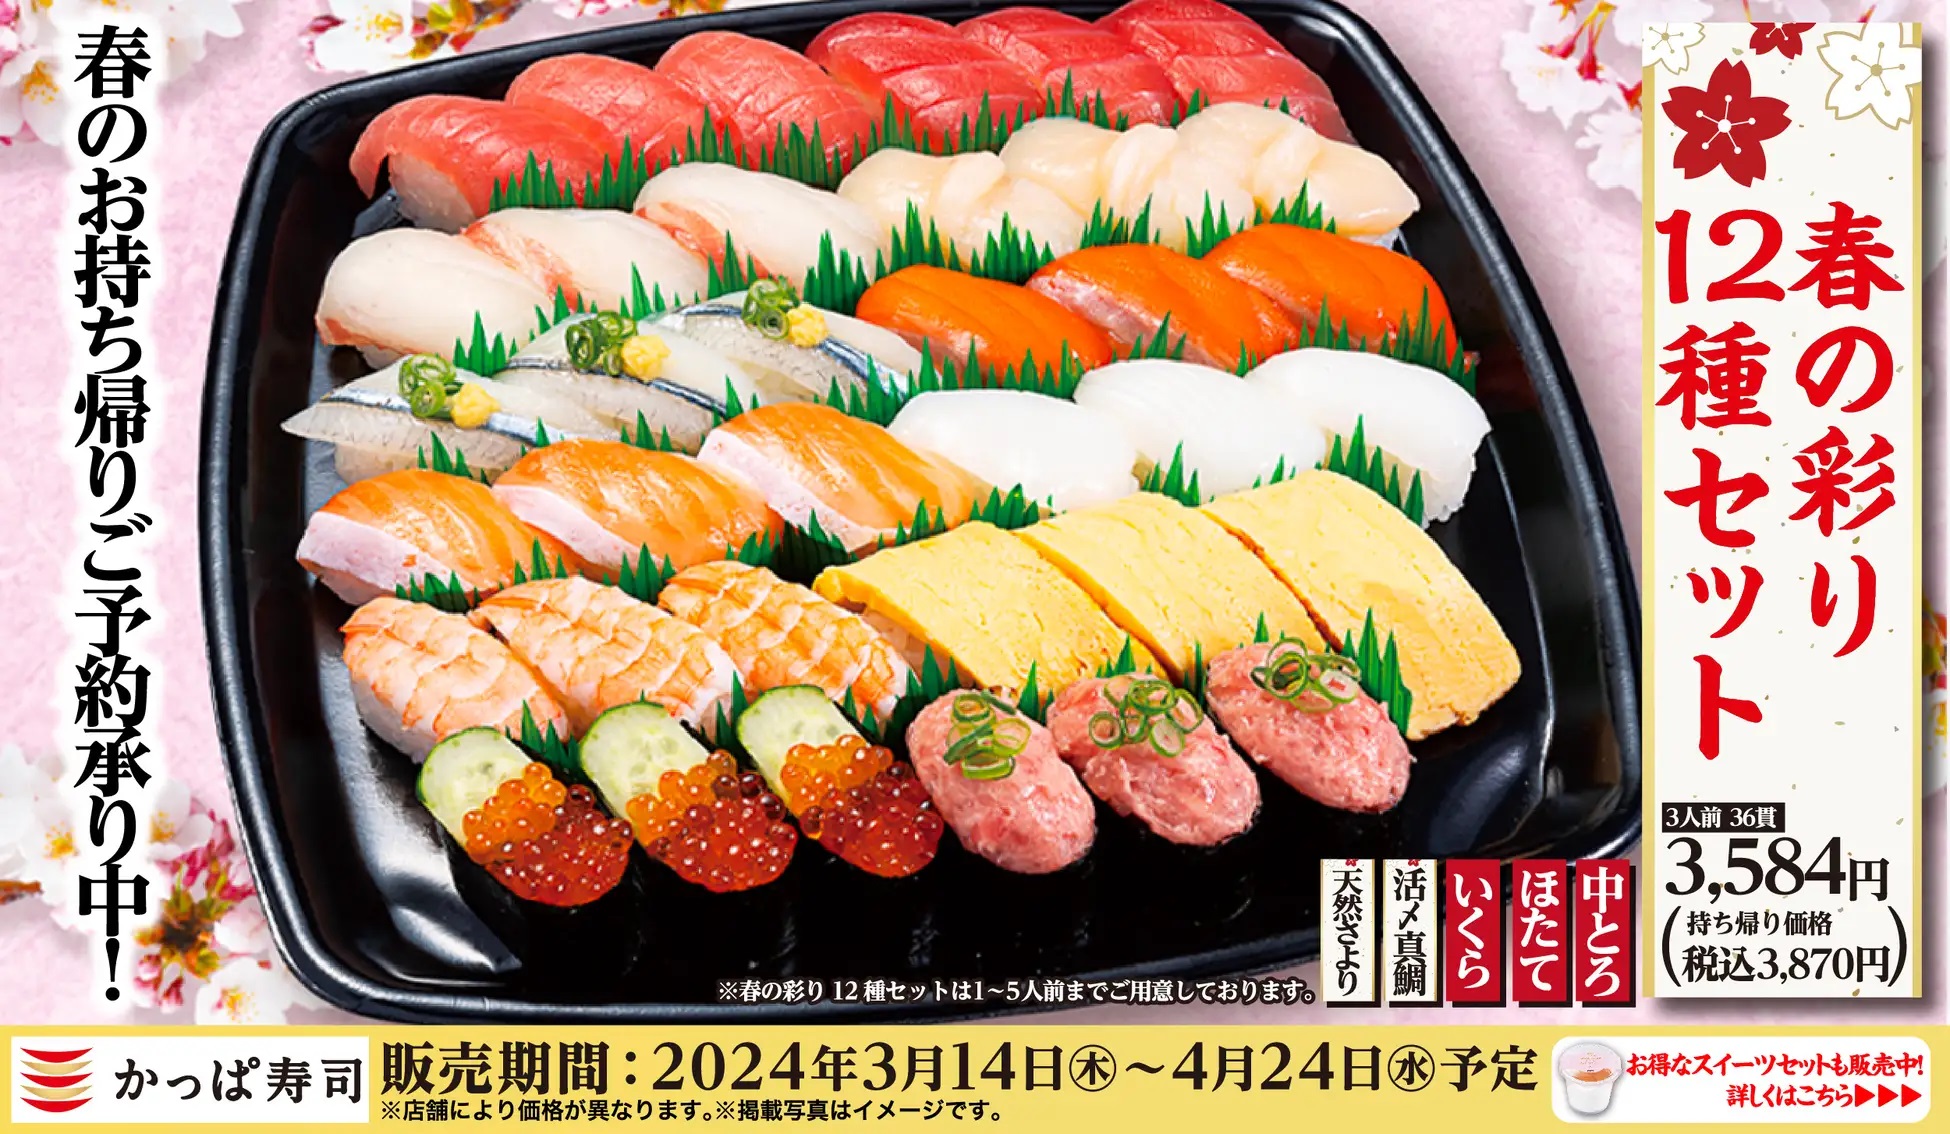 かっぱ寿司 「春の彩り12種セット」発売